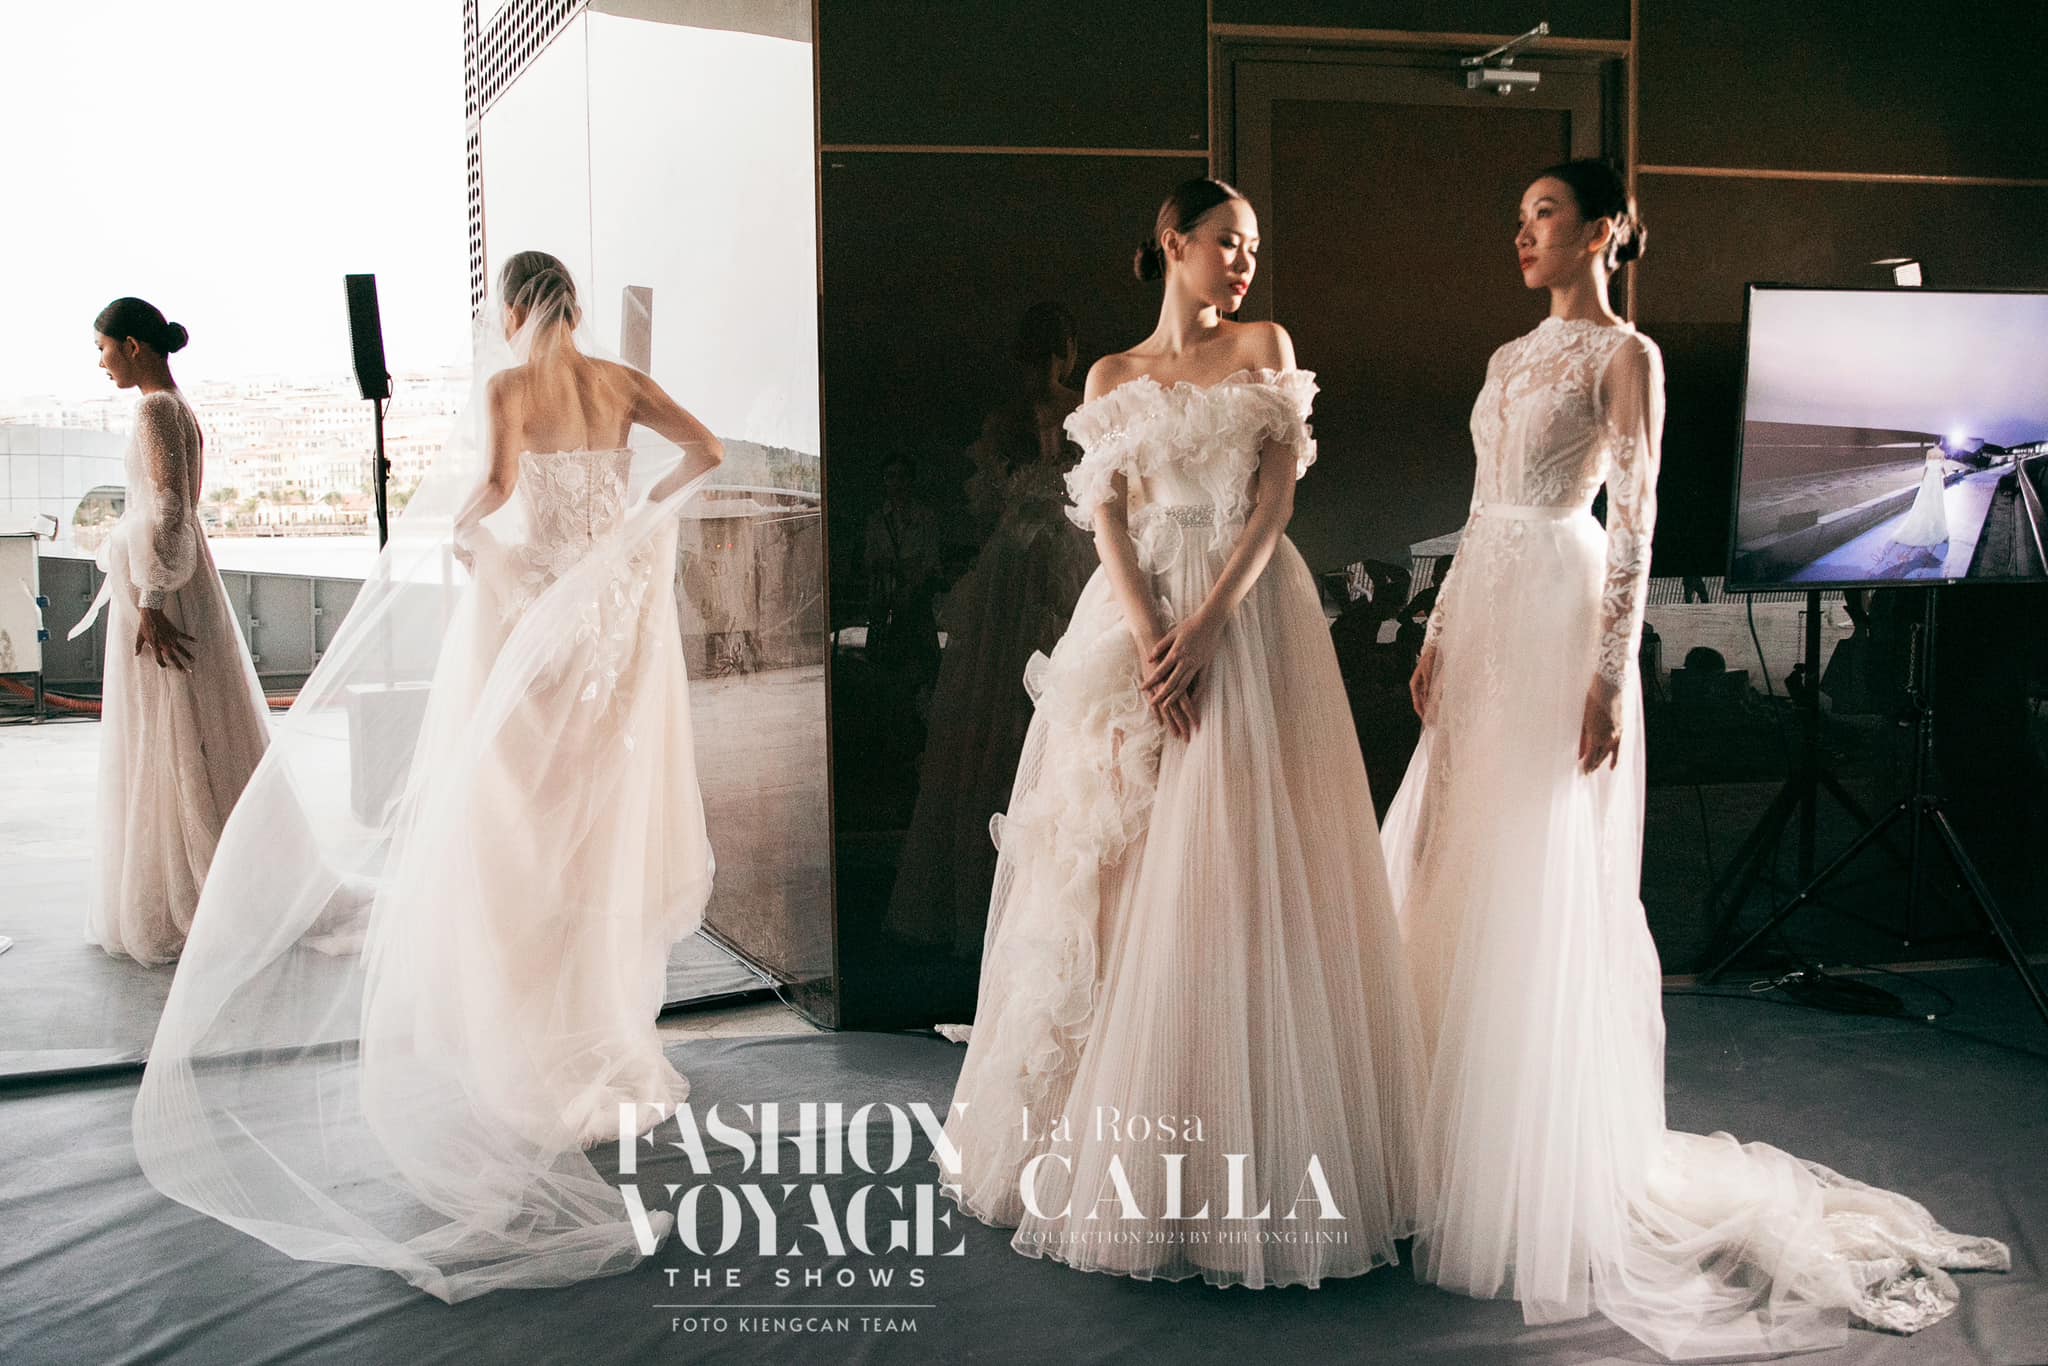 Thuê váy cưới tại Calla Bridal - Lựa chọn hoàn hảo cho ngày trọng đại